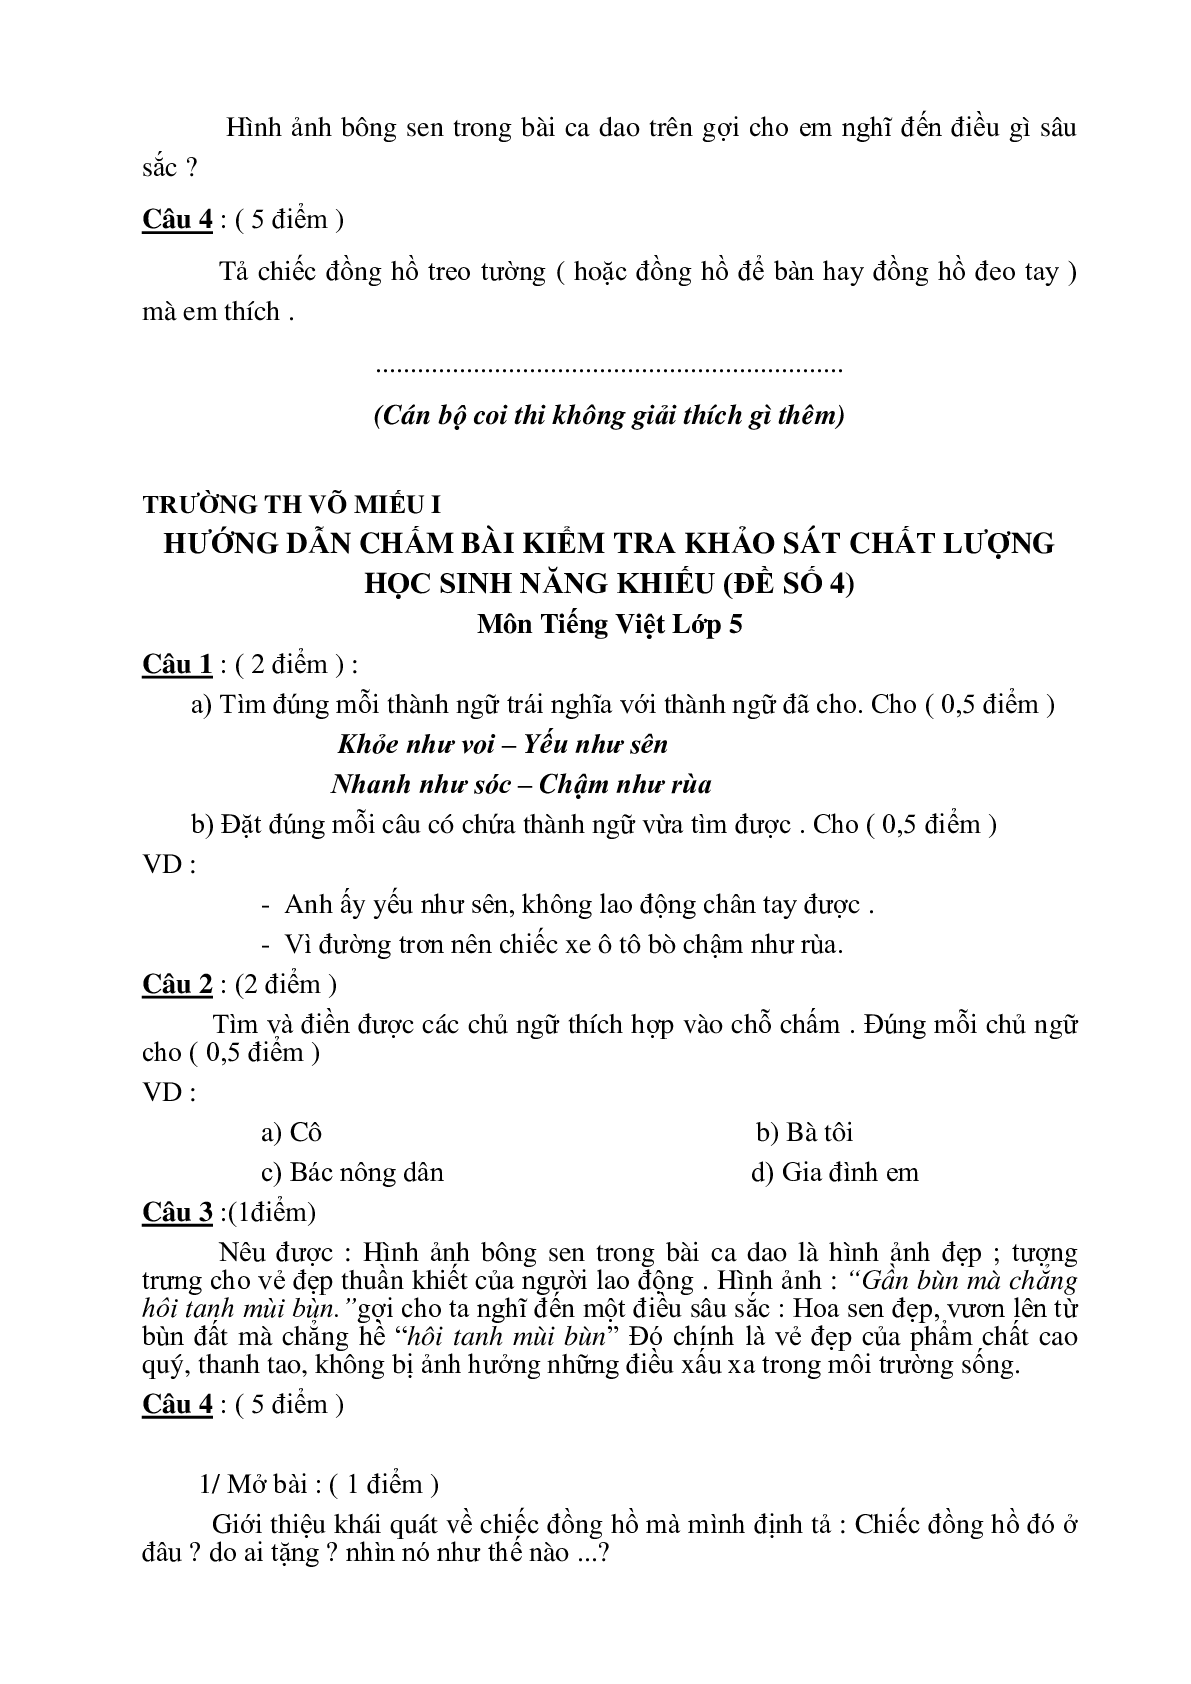 35 đề thi HSG môn Tiếng Việt lớp 5 (trang 8)